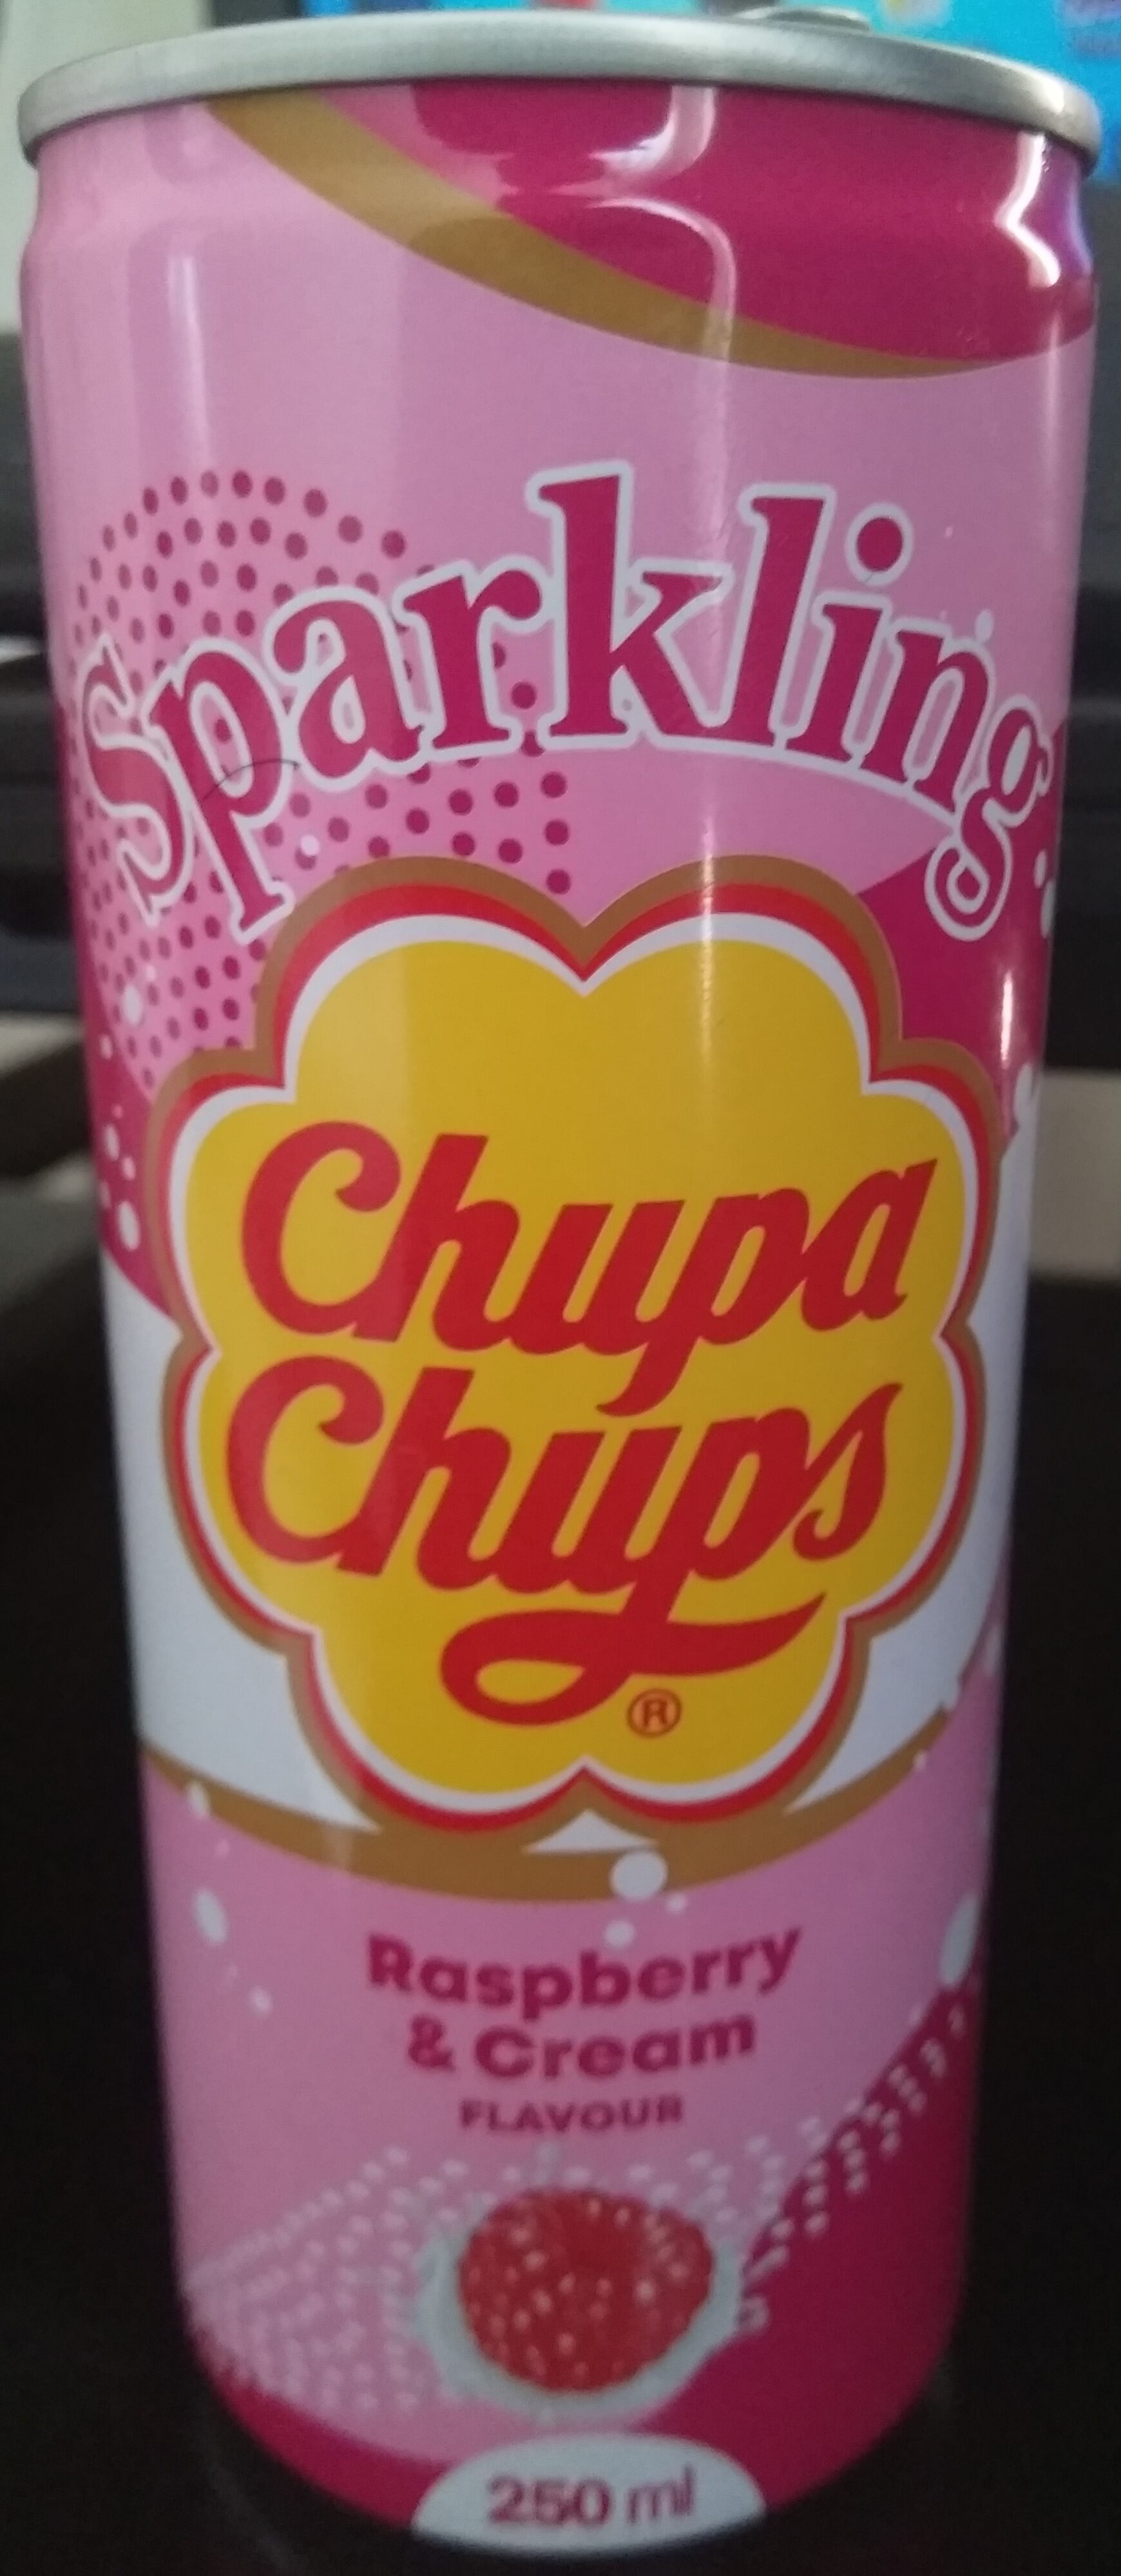 Chupa chups raspberry & cream flavour - Product - fr